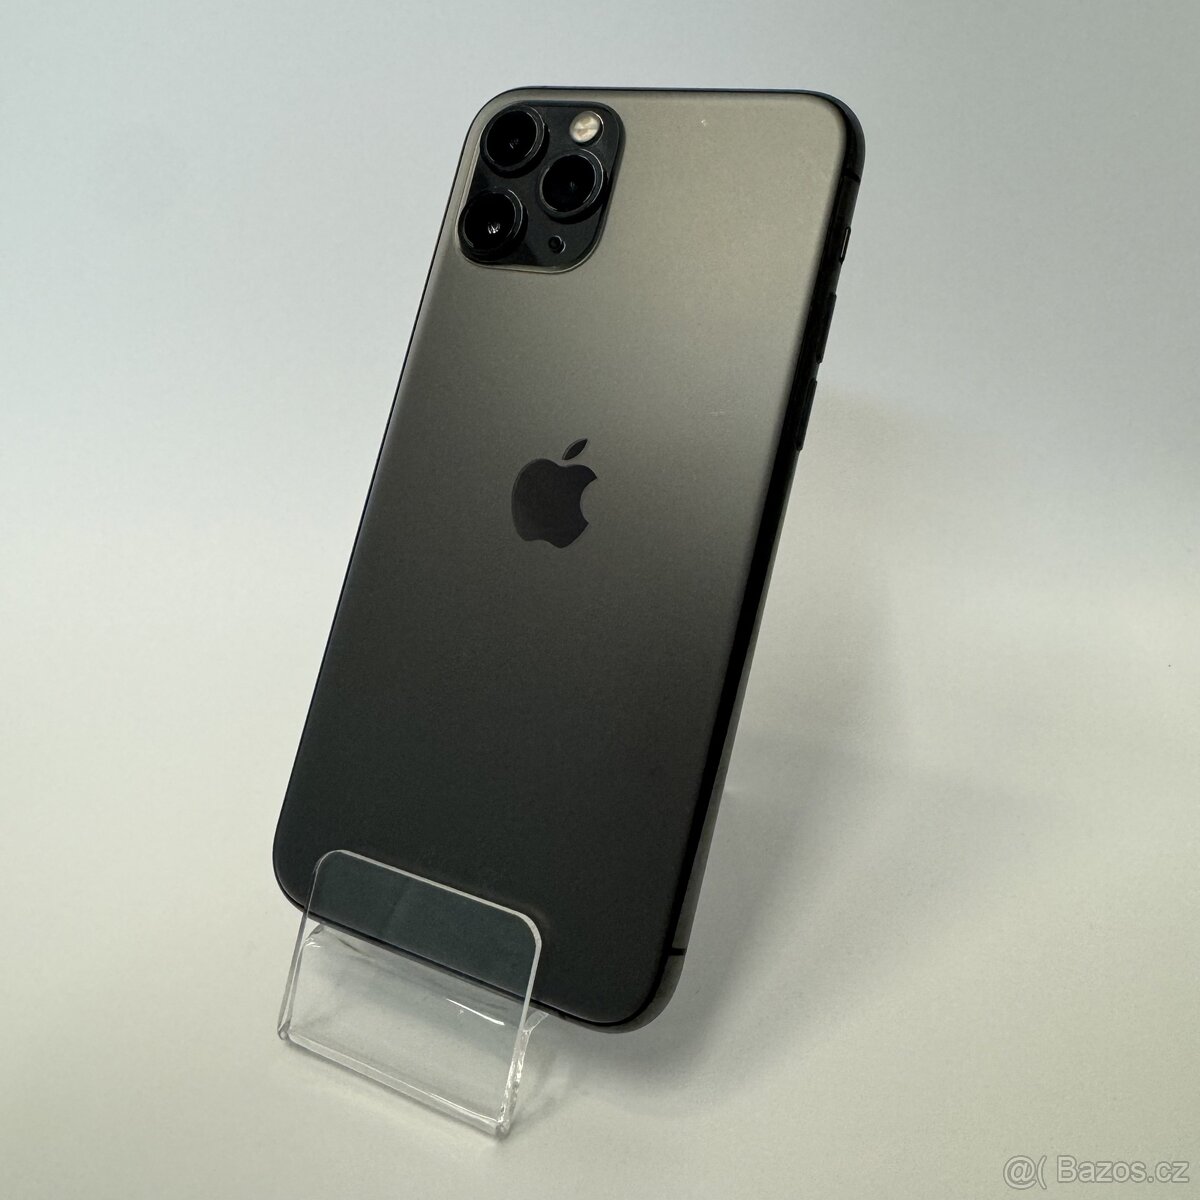 iPhone 11 Pro 64GB, grey (rok záruka)